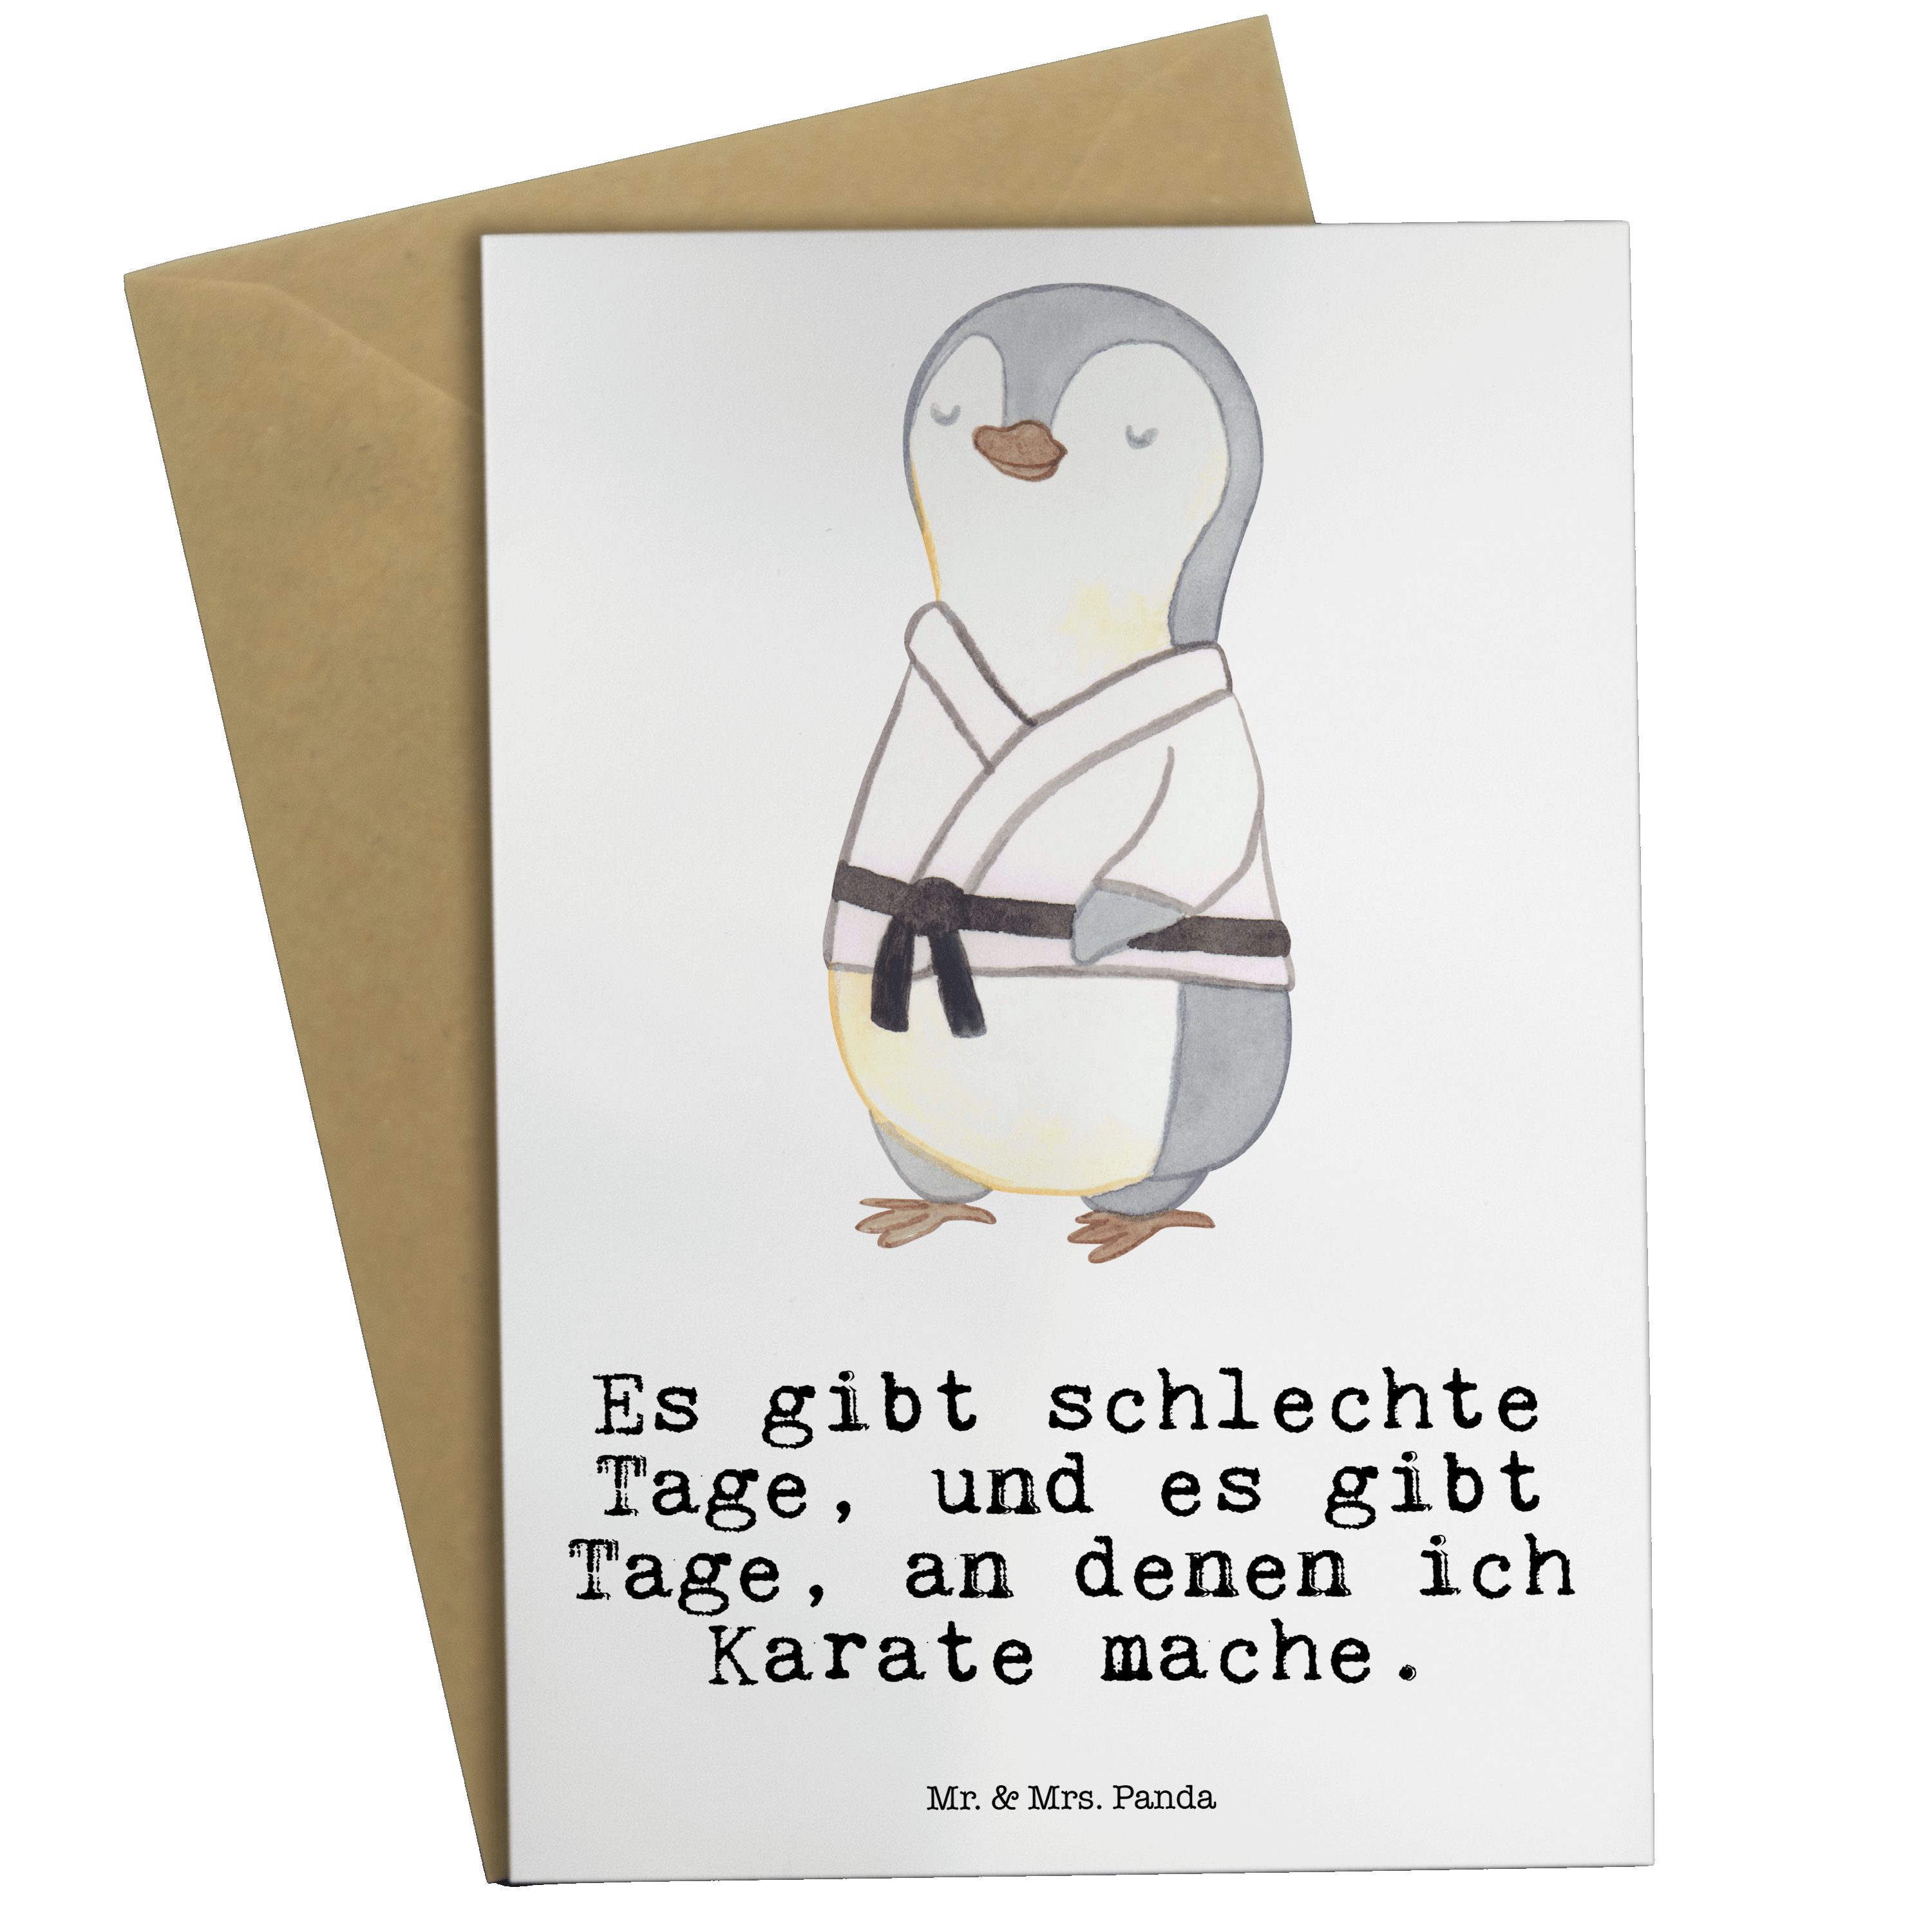 Mr. & Mrs. Panda Grußkarte Pinguin Karate Tage - Weiß - Geschenk, Hobby, Hochzeitskarte, Gewinn